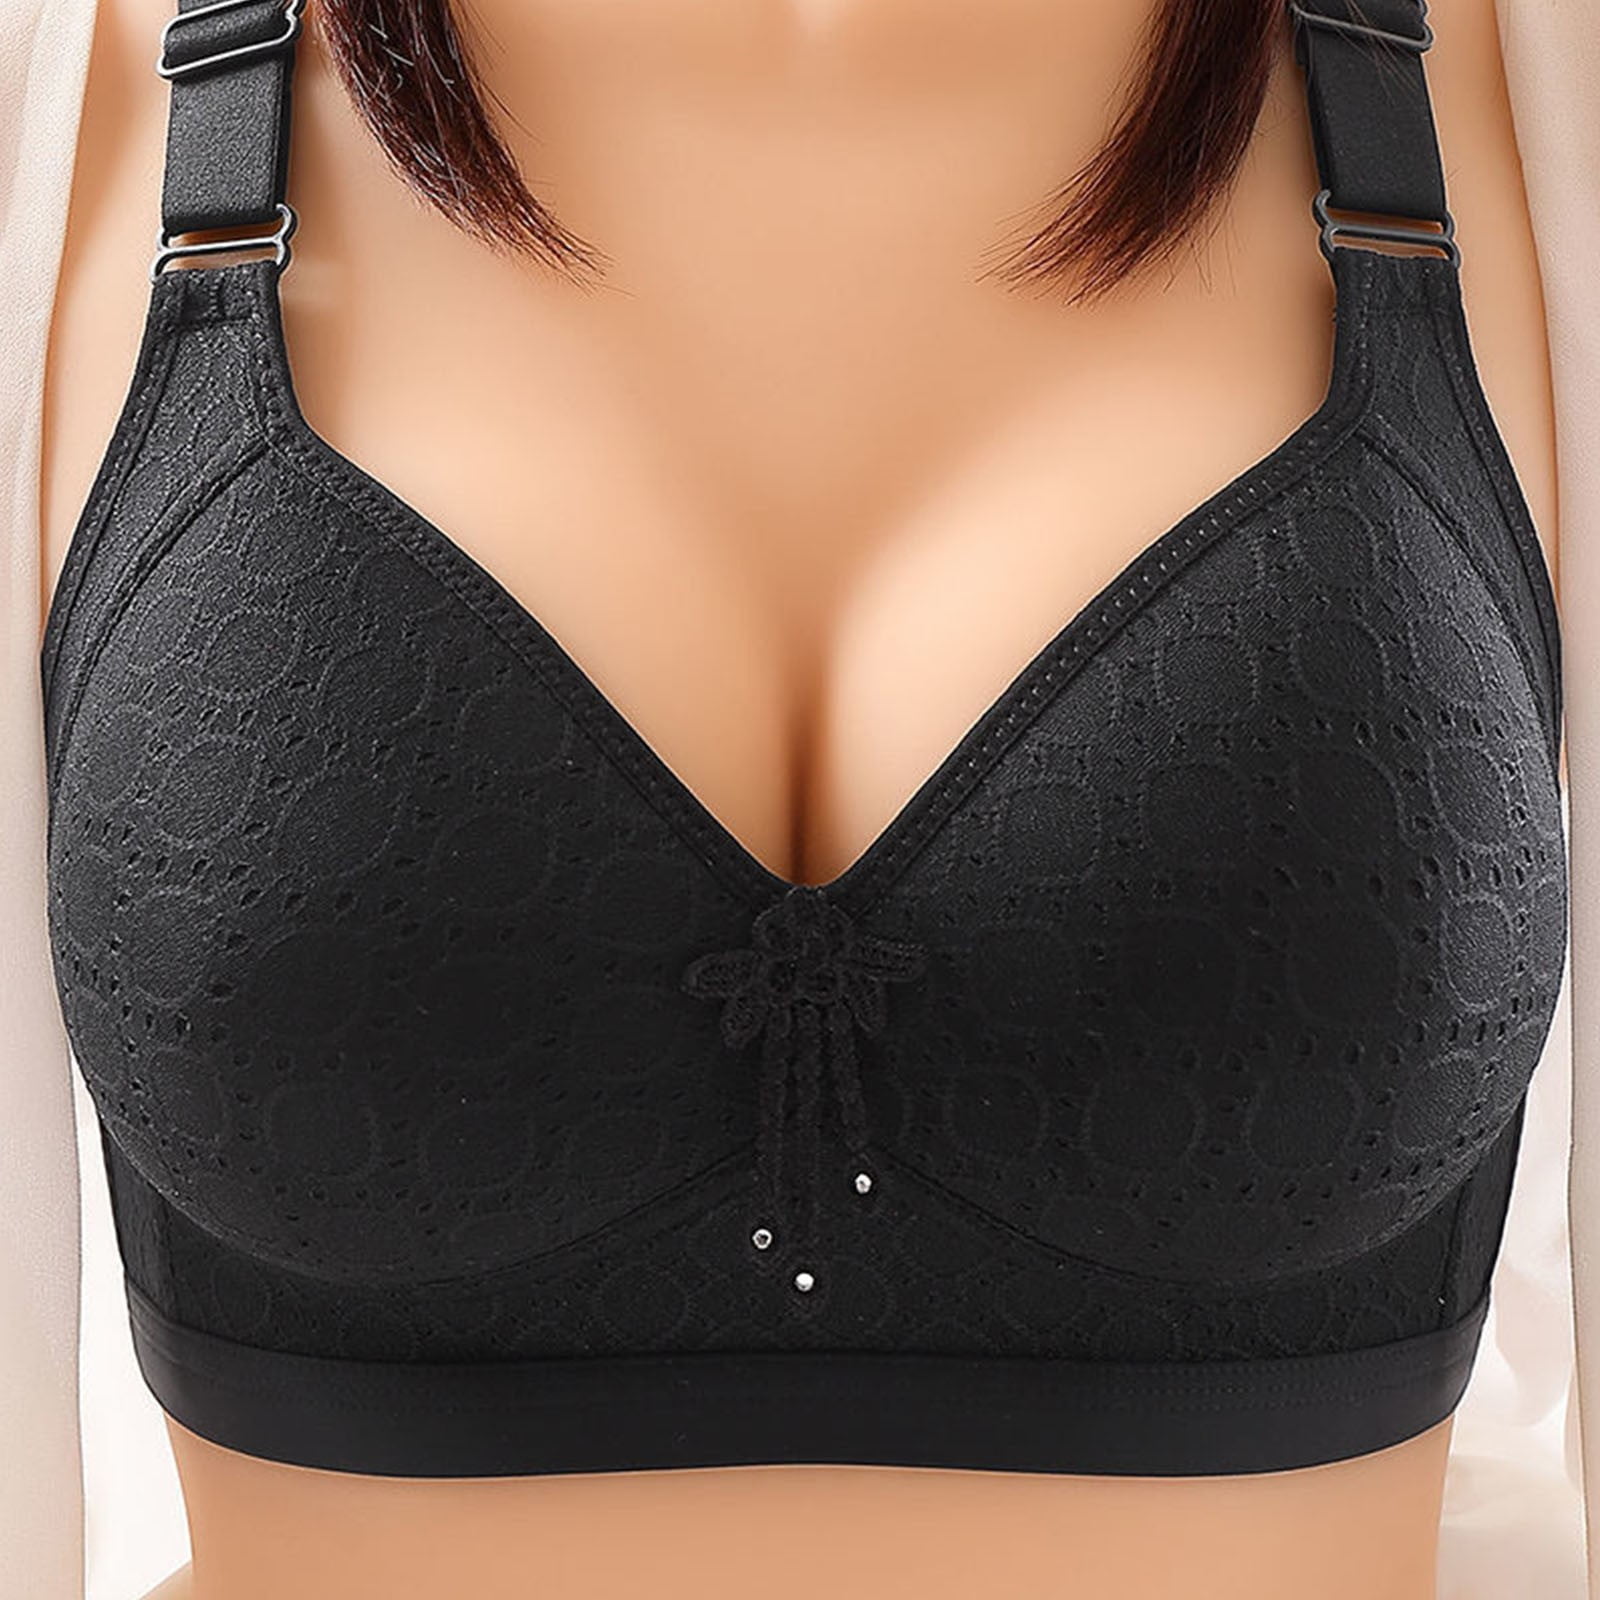 Patlollav Woman Plus Size Clearance Bras Comfortable Breathable Bra Lingerie